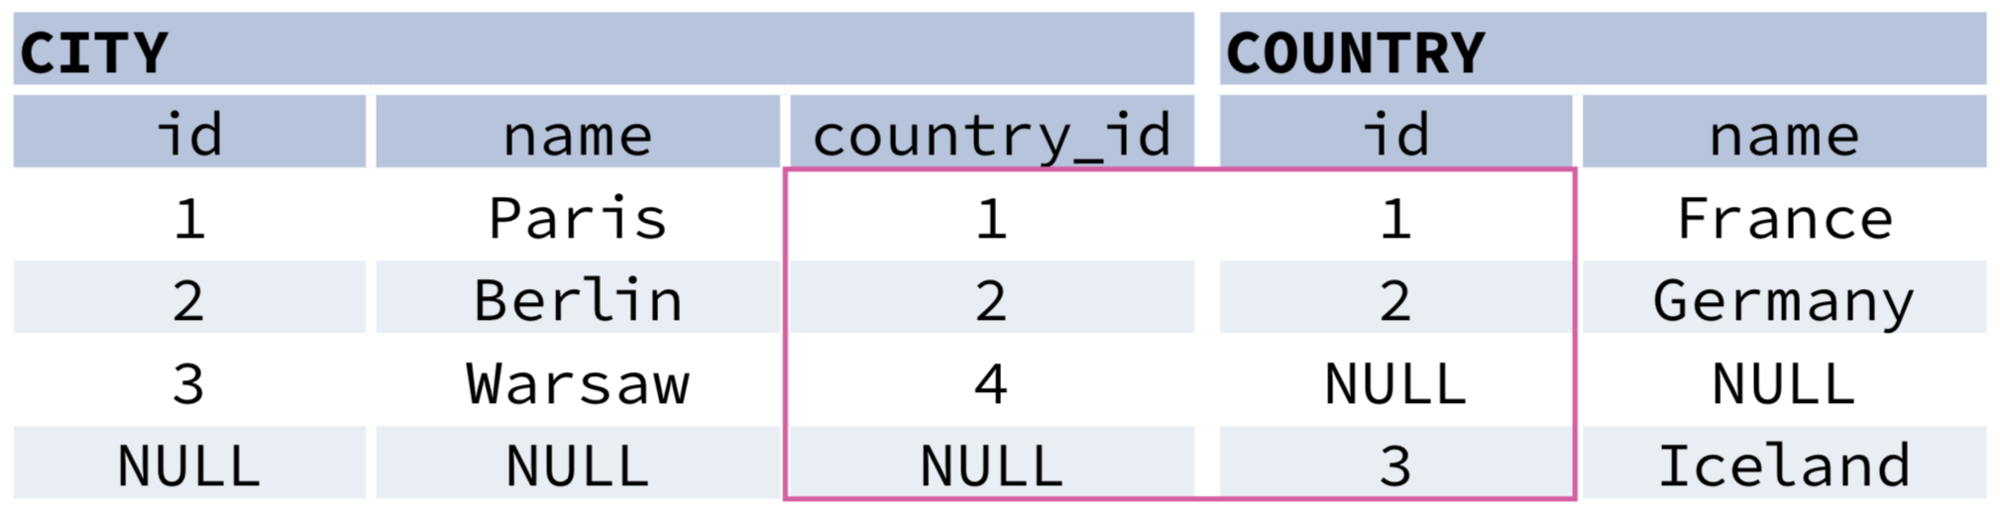 Шпаргалка по SQL. MYSQL шпаргалка. Join SQL шпаргалка. Шпаргалка по SQL запросам. Join country